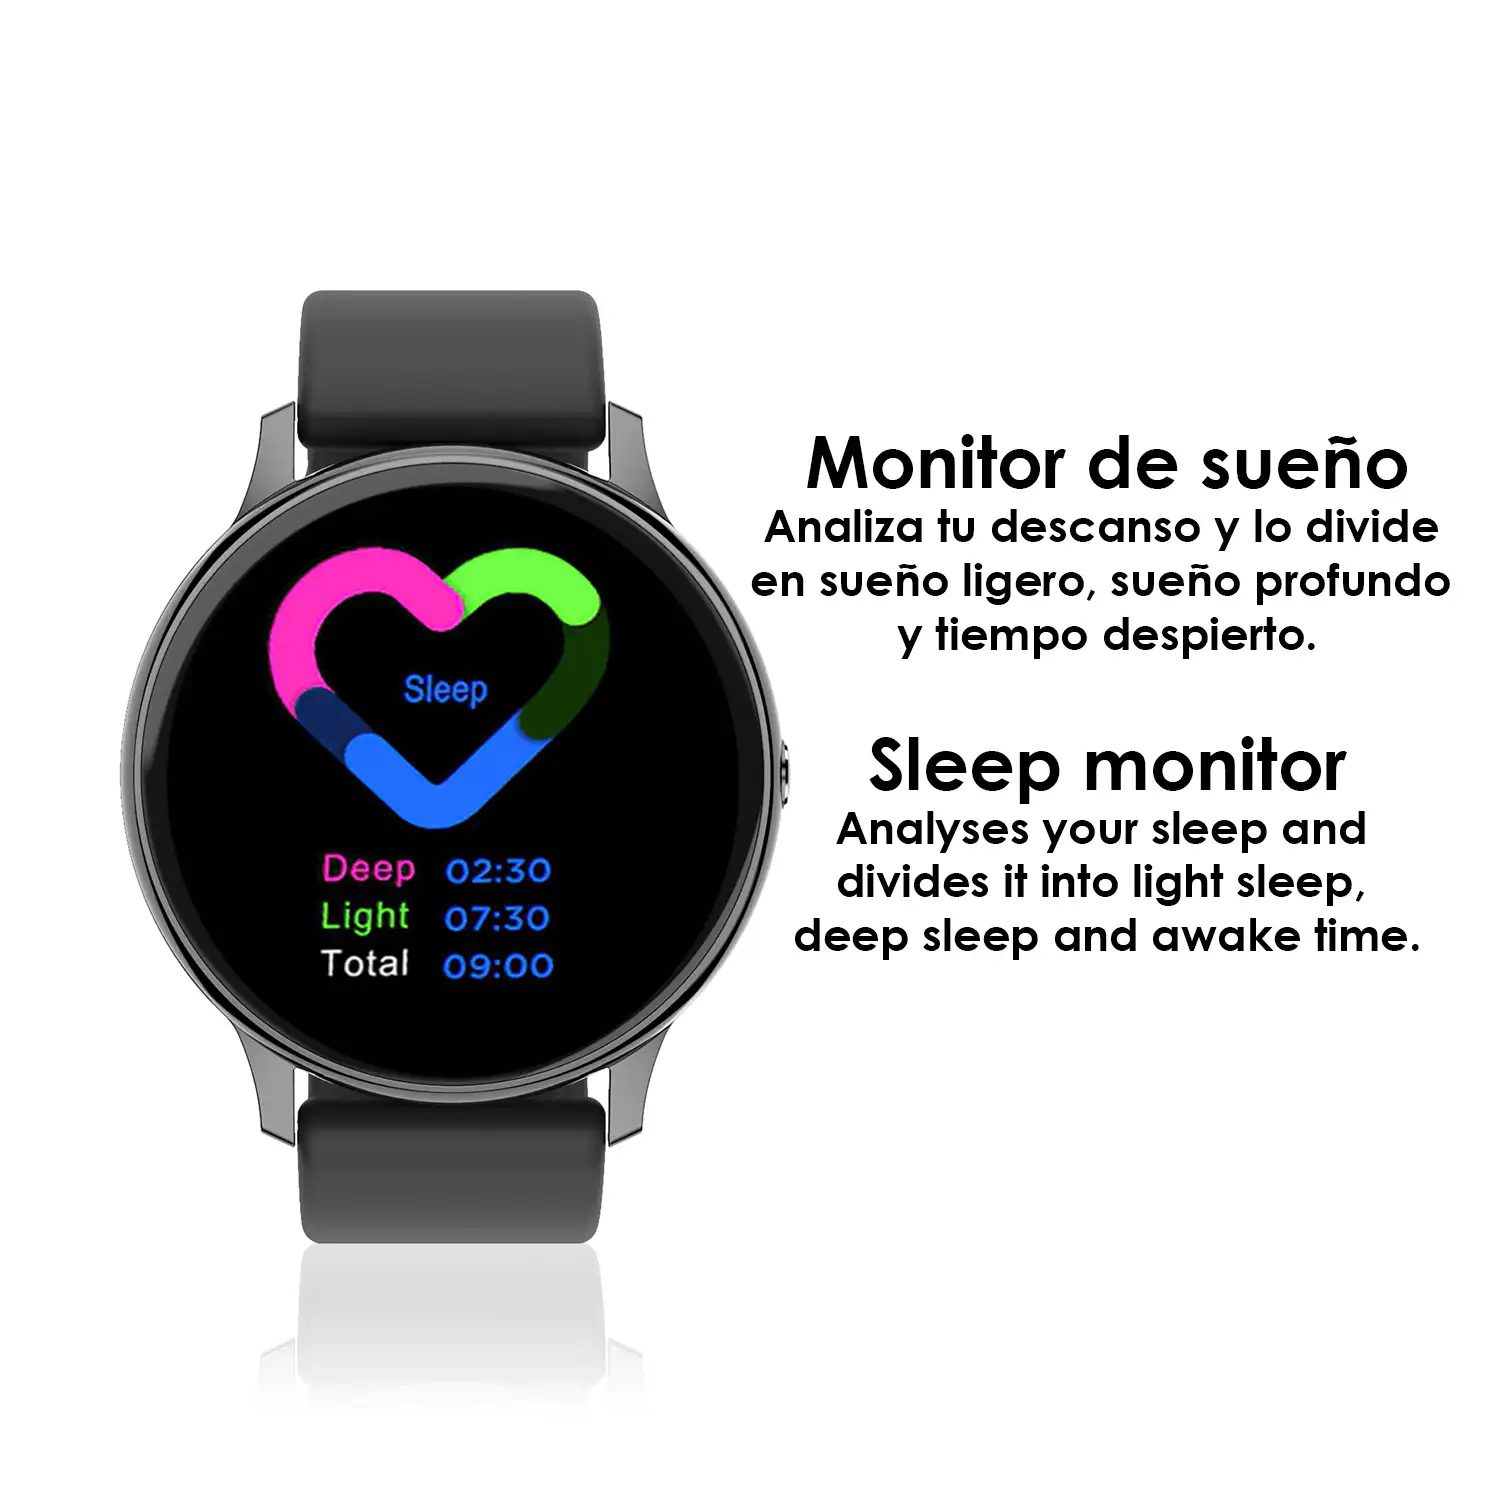 Smartwatch DT88 PRO con monitor cardiaco, ECG,  tensión y O2 en sangre. 9 modos deportivos.